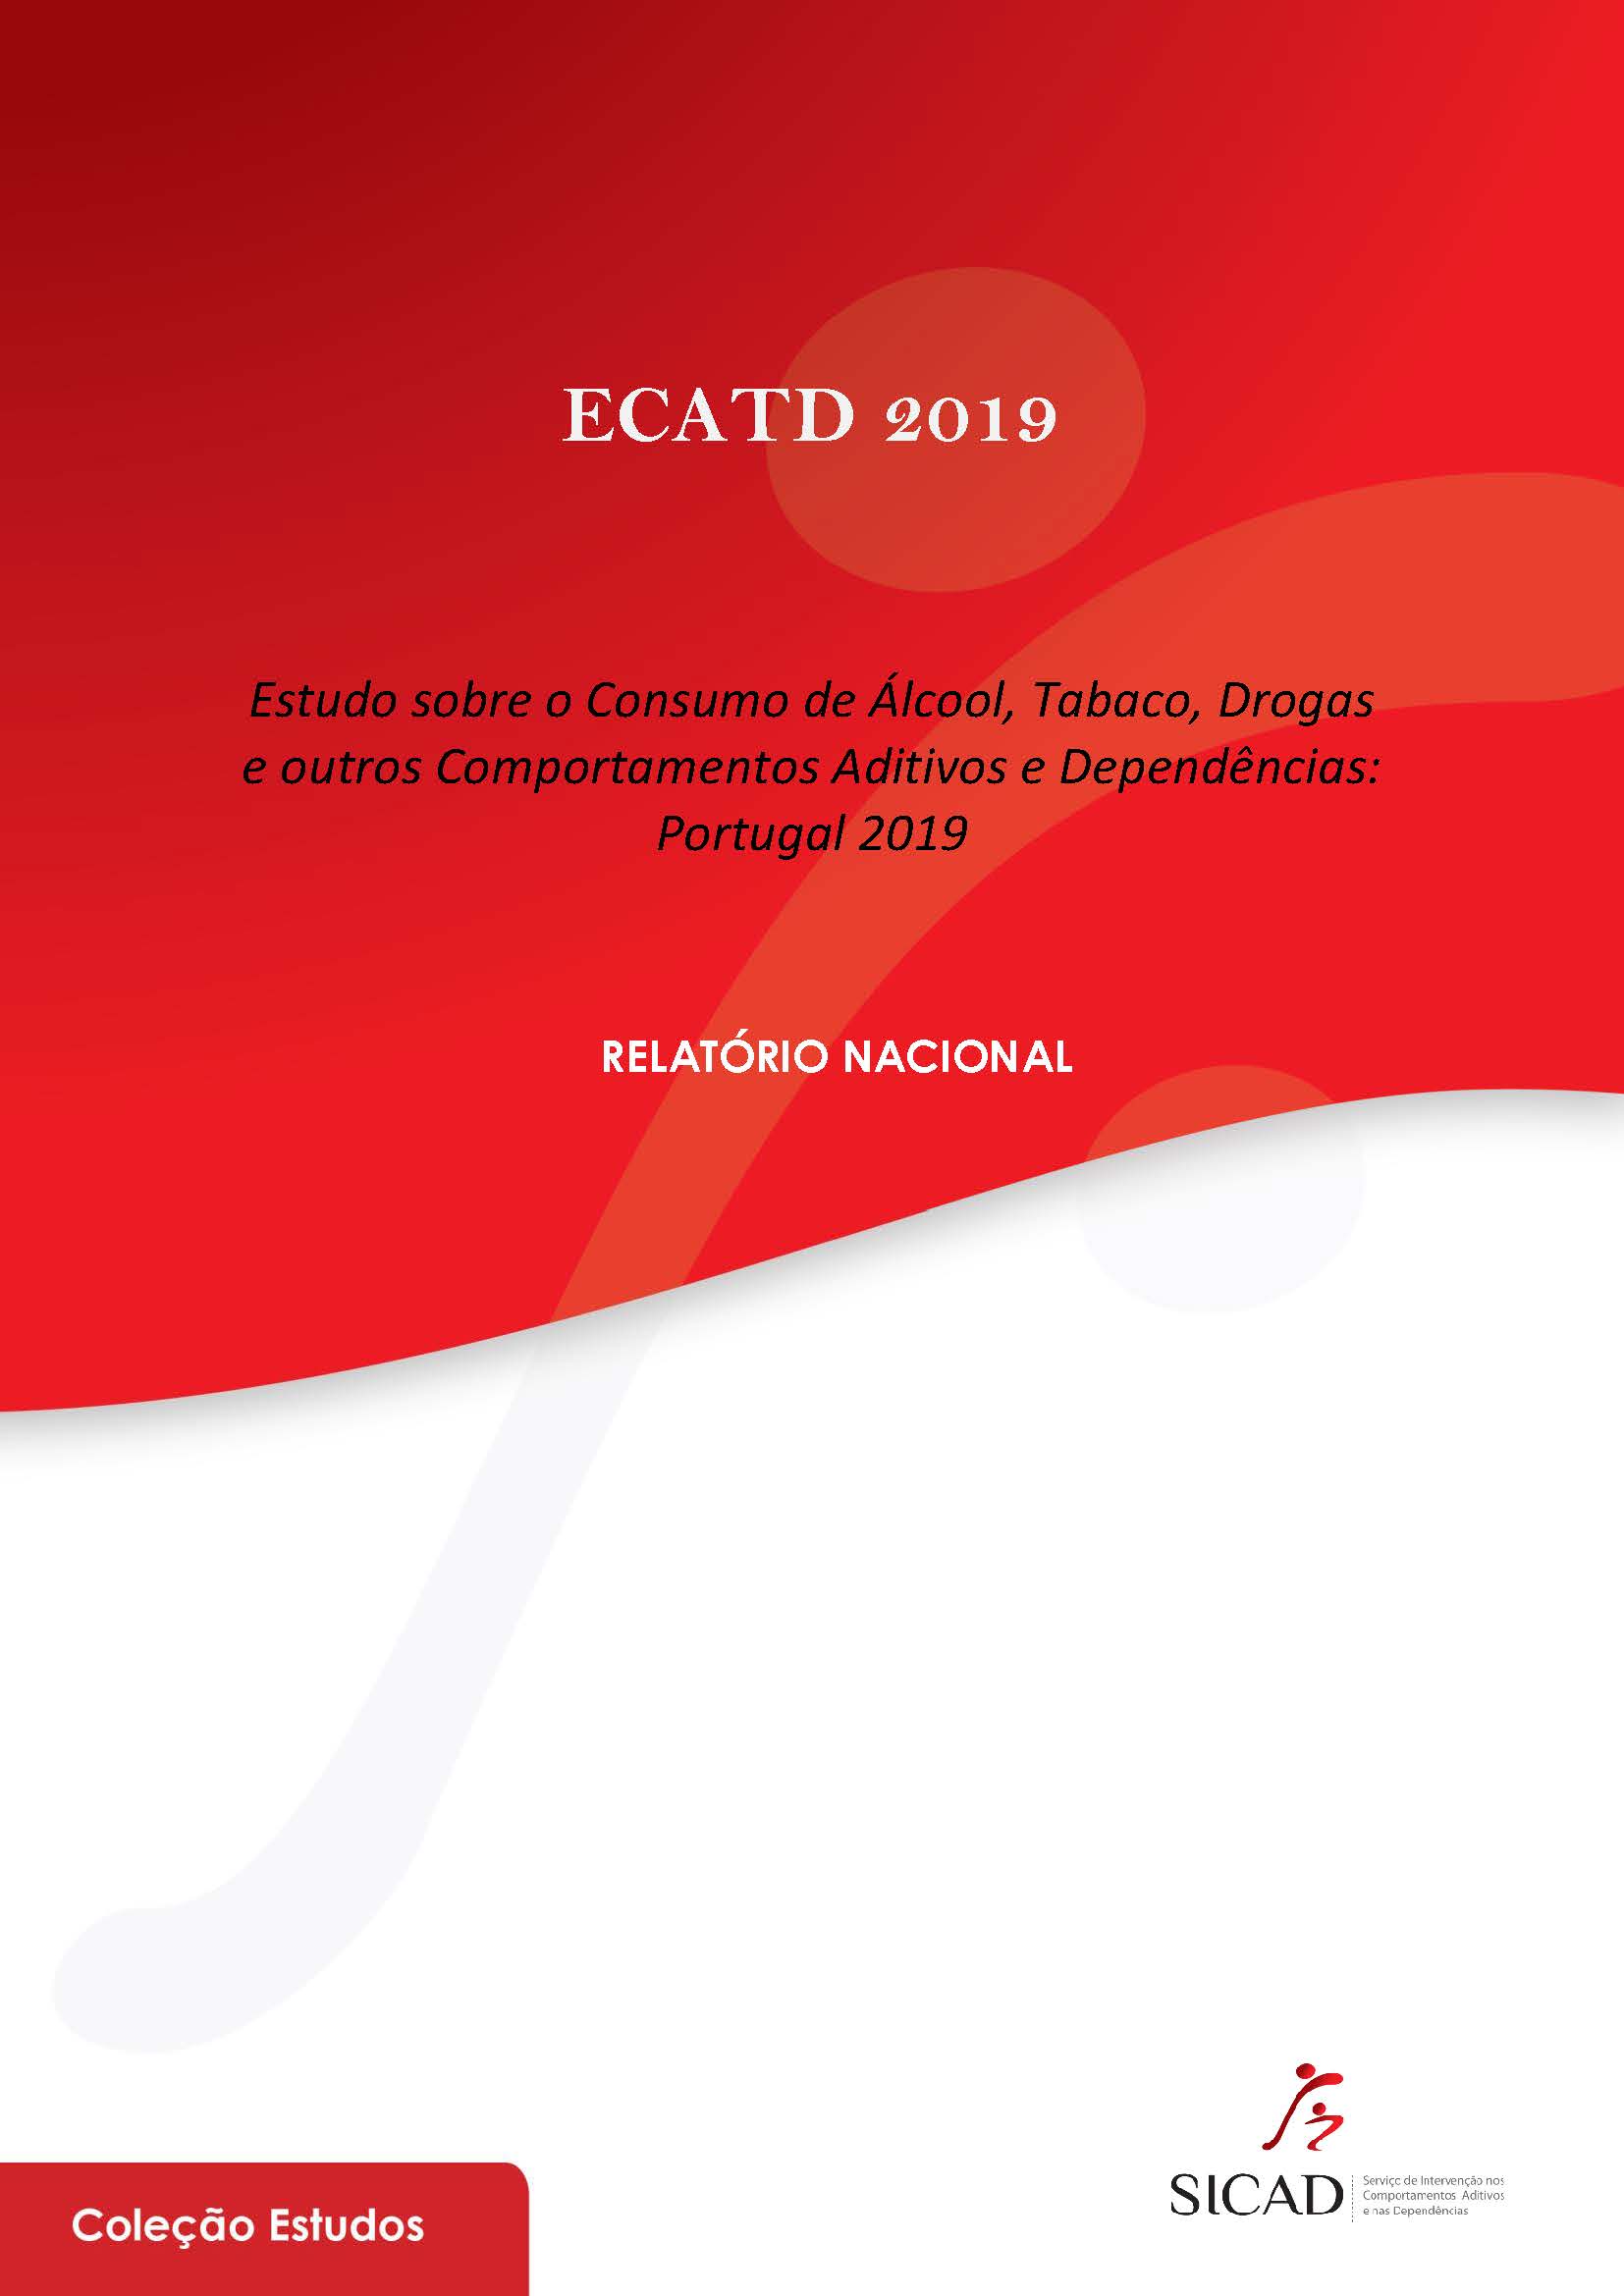 imagem da publicação ECATD 2019